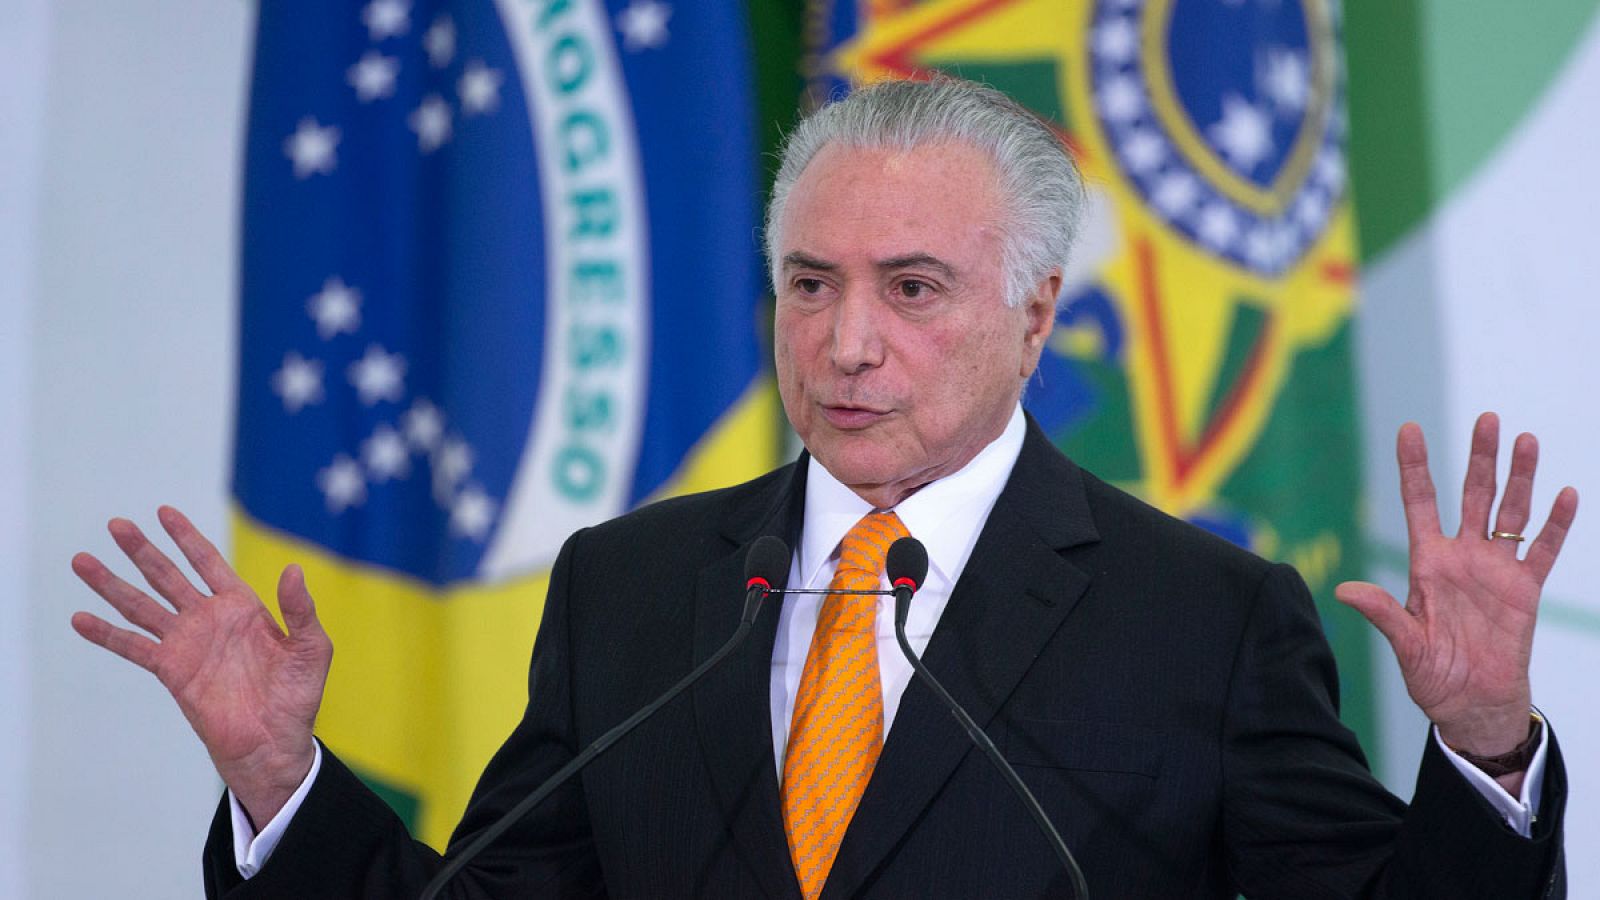 La Policía de Brasil señala al presidente Temer por delitos de asociación para delinquir, corrupción y lavado de dinero